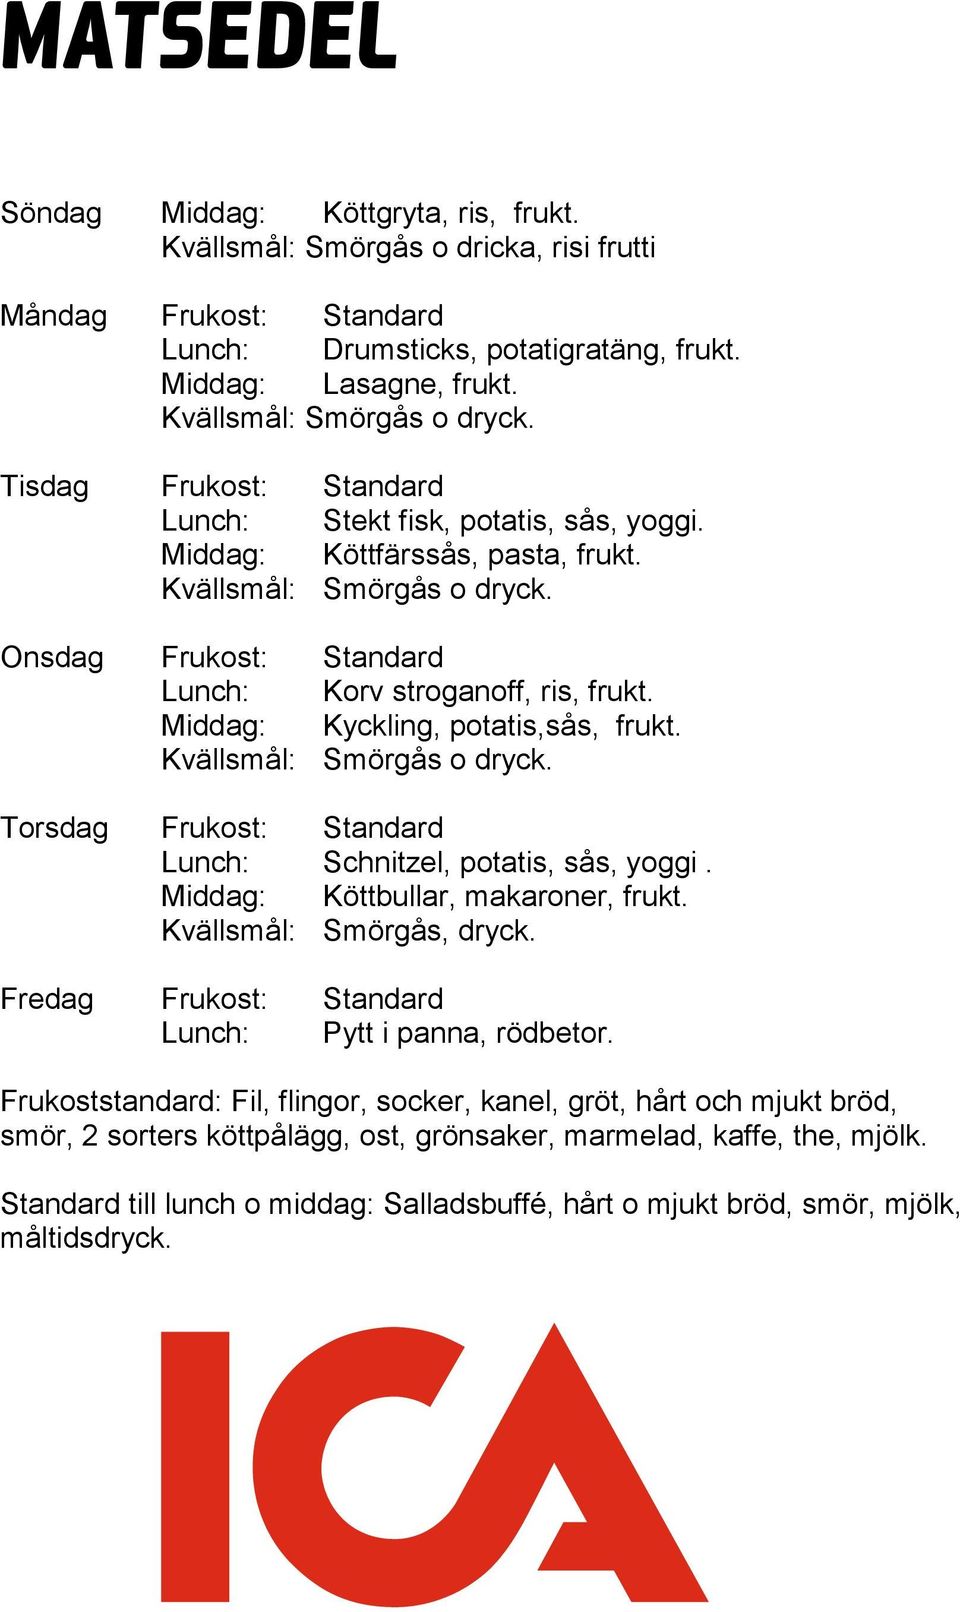 Onsdag Frukost: Standard Lunch: Korv stroganoff, ris, frukt. Middag: Kyckling, potatis,sås, frukt. Kvällsmål: Smörgås o dryck. Torsdag Frukost: Standard Lunch: Schnitzel, potatis, sås, yoggi.